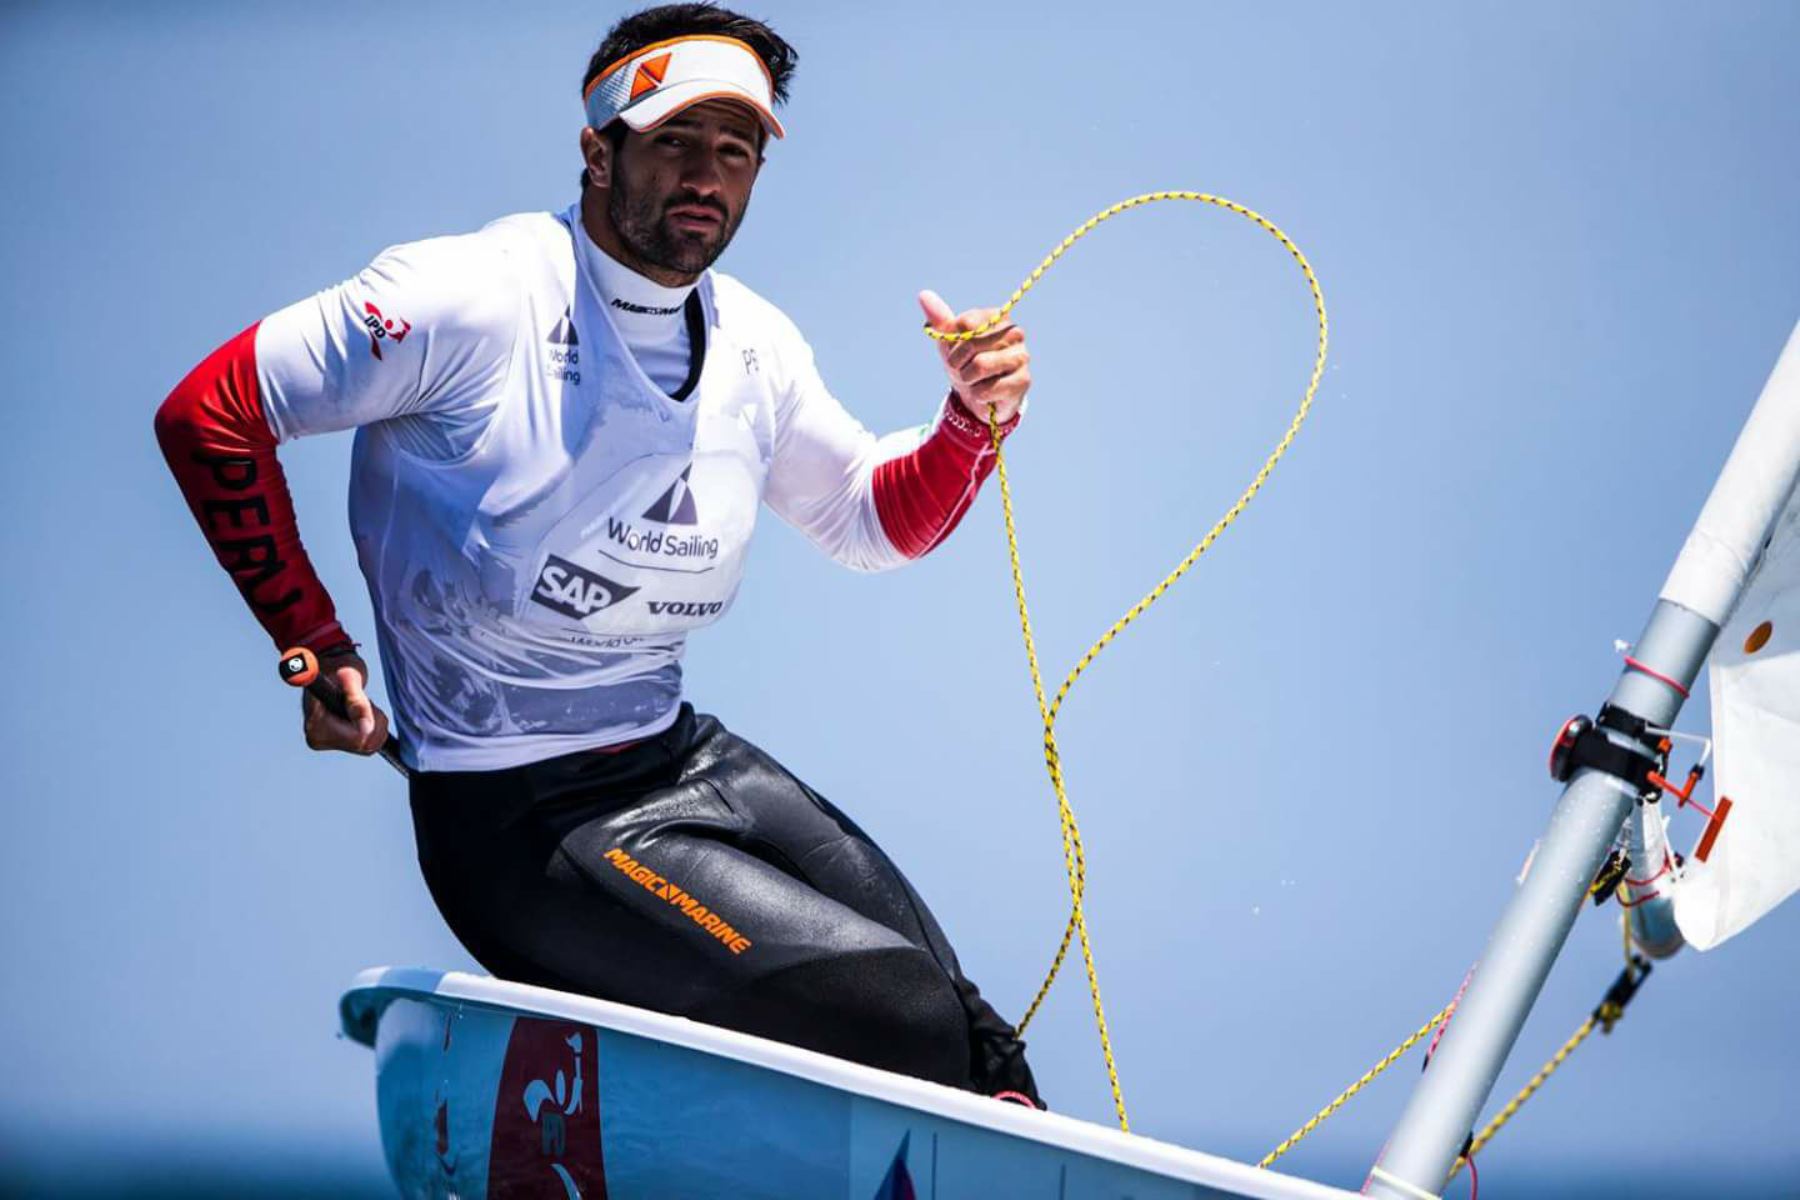 El velerista nacional Stefano Peschiera consigue la primera plaza para Perú en los Juegos Olímpicos. Foto: Facebook Stefano Peschiera